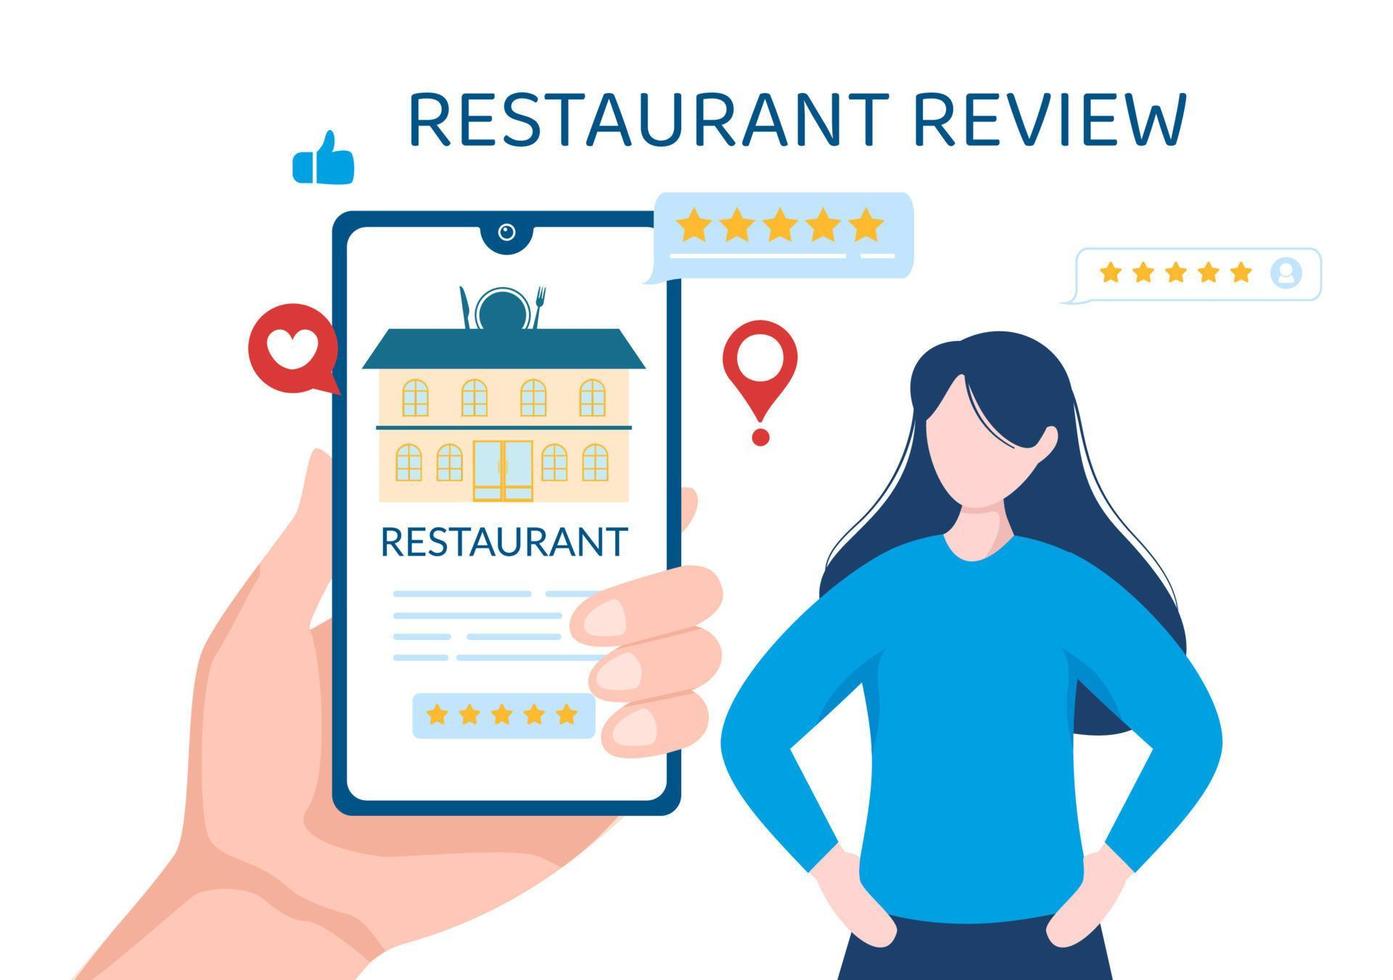 restaurantbewertungsvorlage handgezeichnete flache illustration der karikatur mit kundenfeedback, bewertungsstern, expertenmeinung und online-umfrage vektor